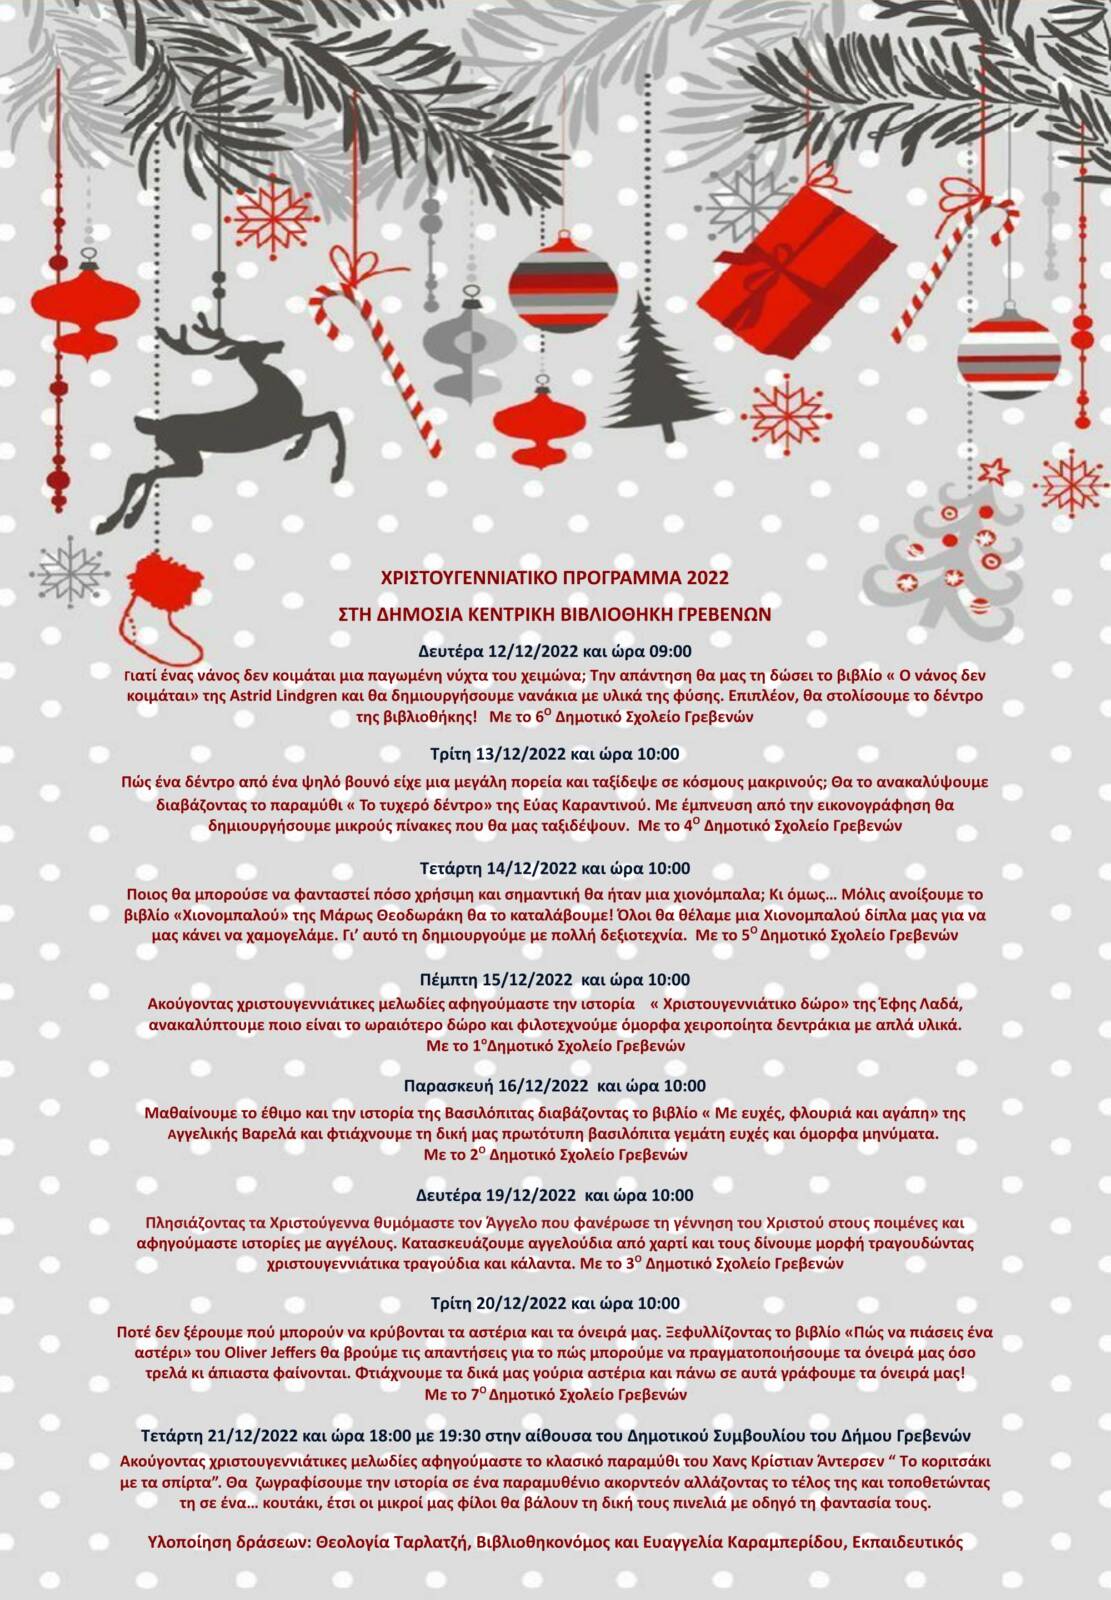 Δημόσια Κεντρική Βιβλιοθήκη Γρεβενών : Το Xριστουγεννιάτικο Πρόγραμμα 2022 από την Δευτέρα 12 έως την Τετάρτη 21 Δεκεμβρίου